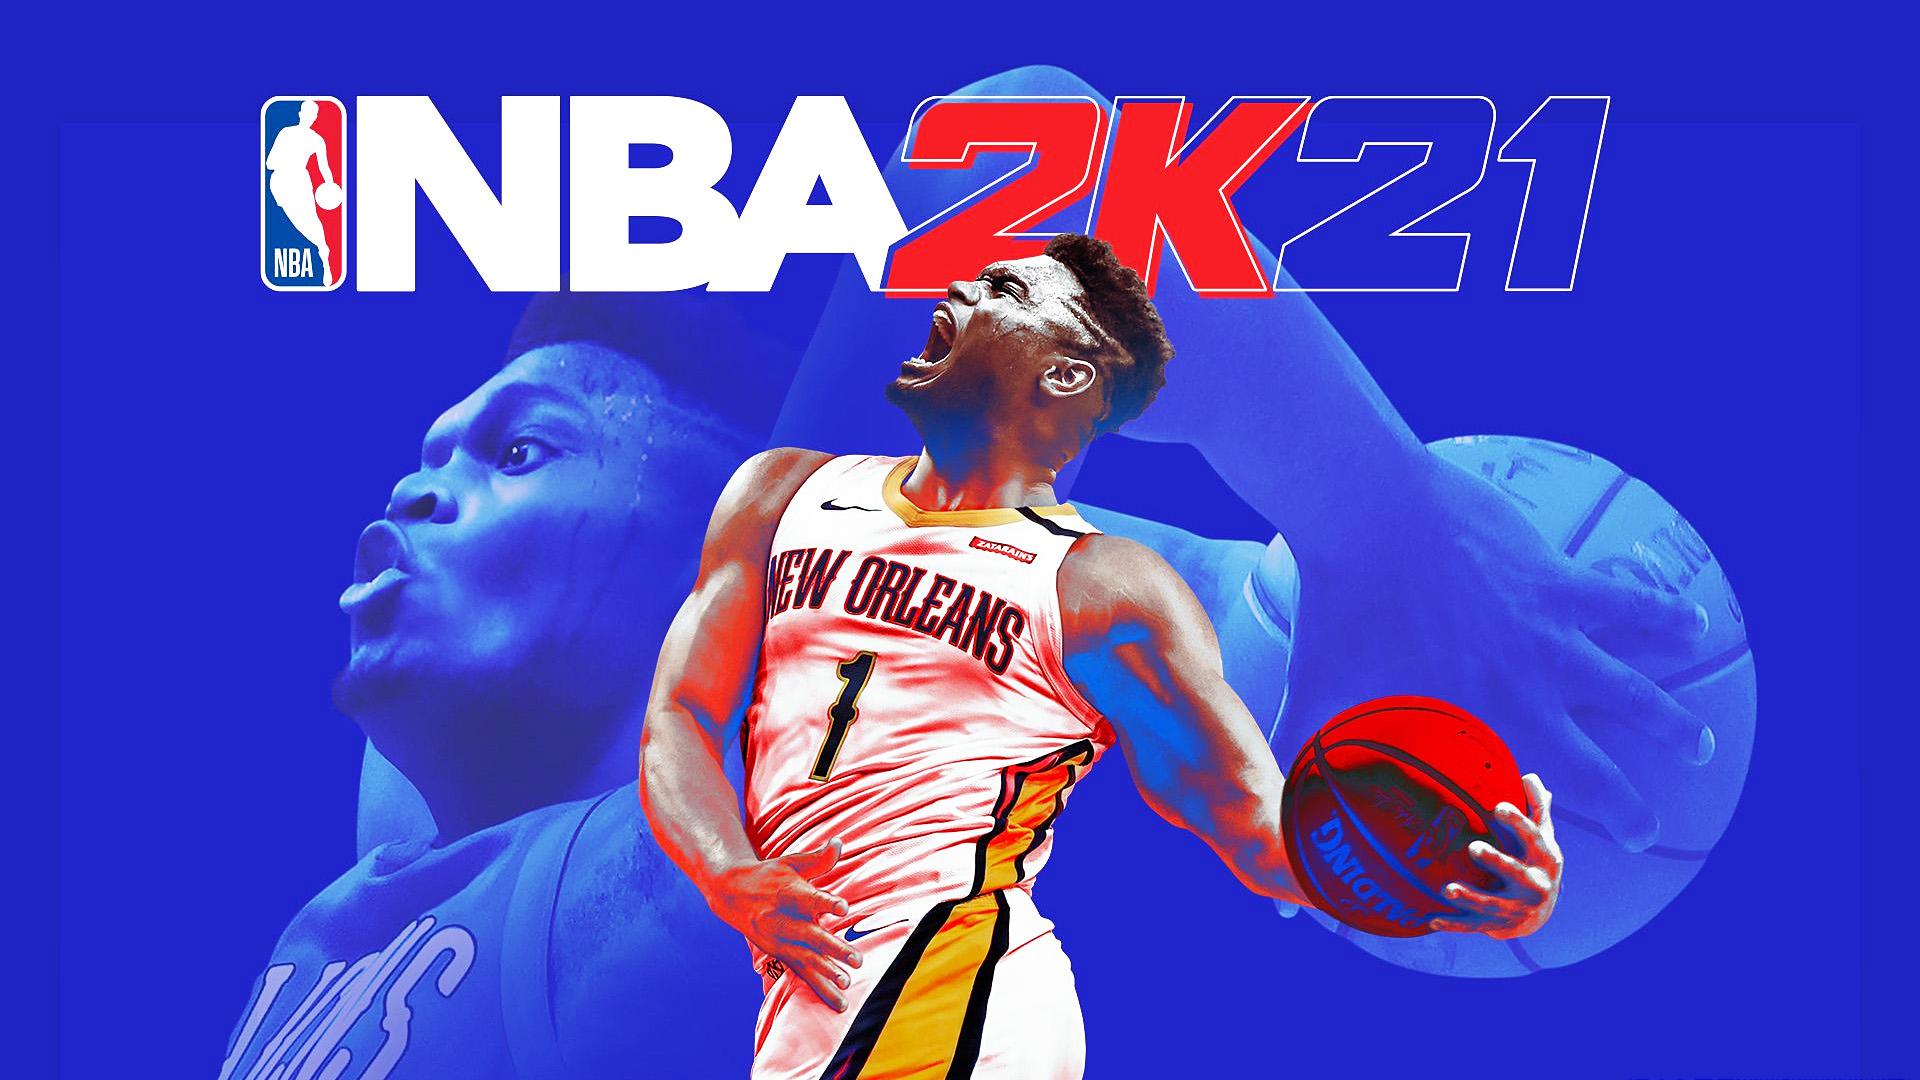 انتشار بازی NBA 2K21 با گرافیک بهتر برای سرویس اپل آرکید